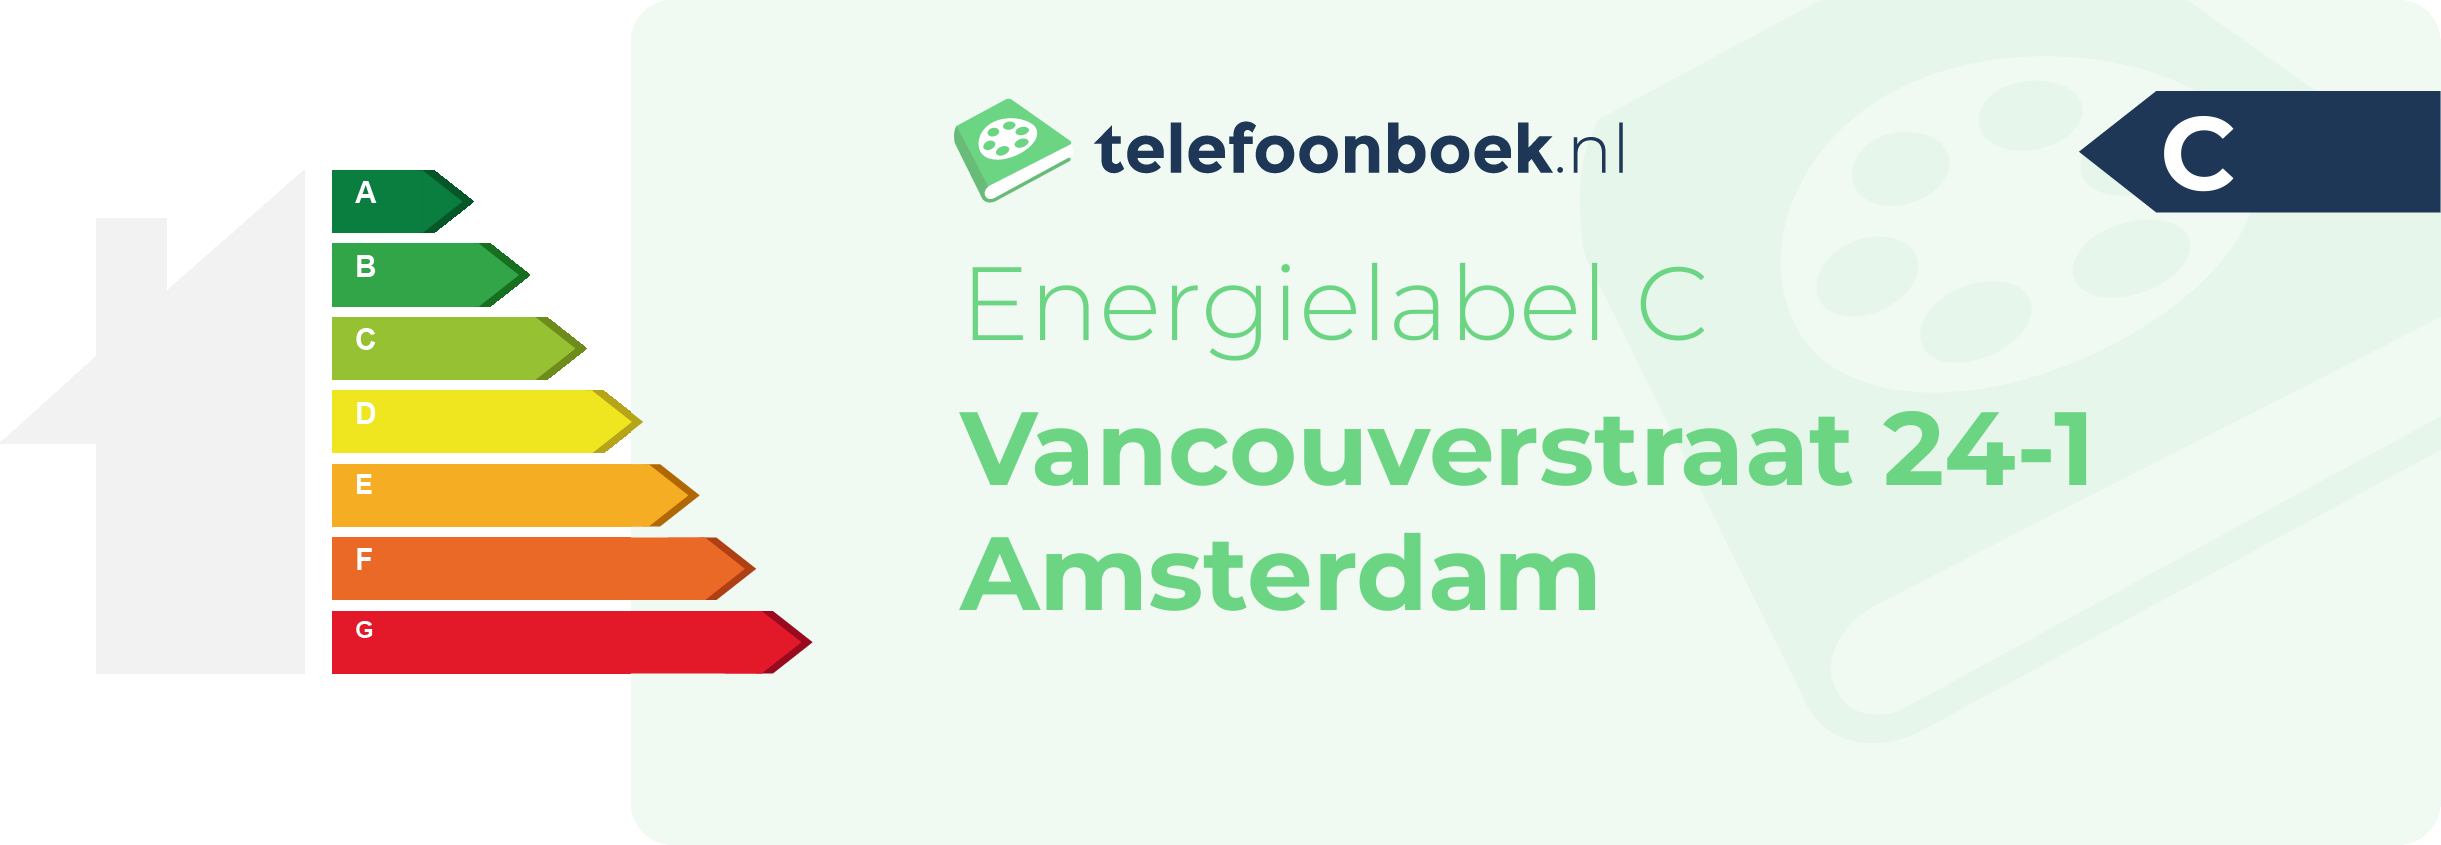 Energielabel Vancouverstraat 24-1 Amsterdam